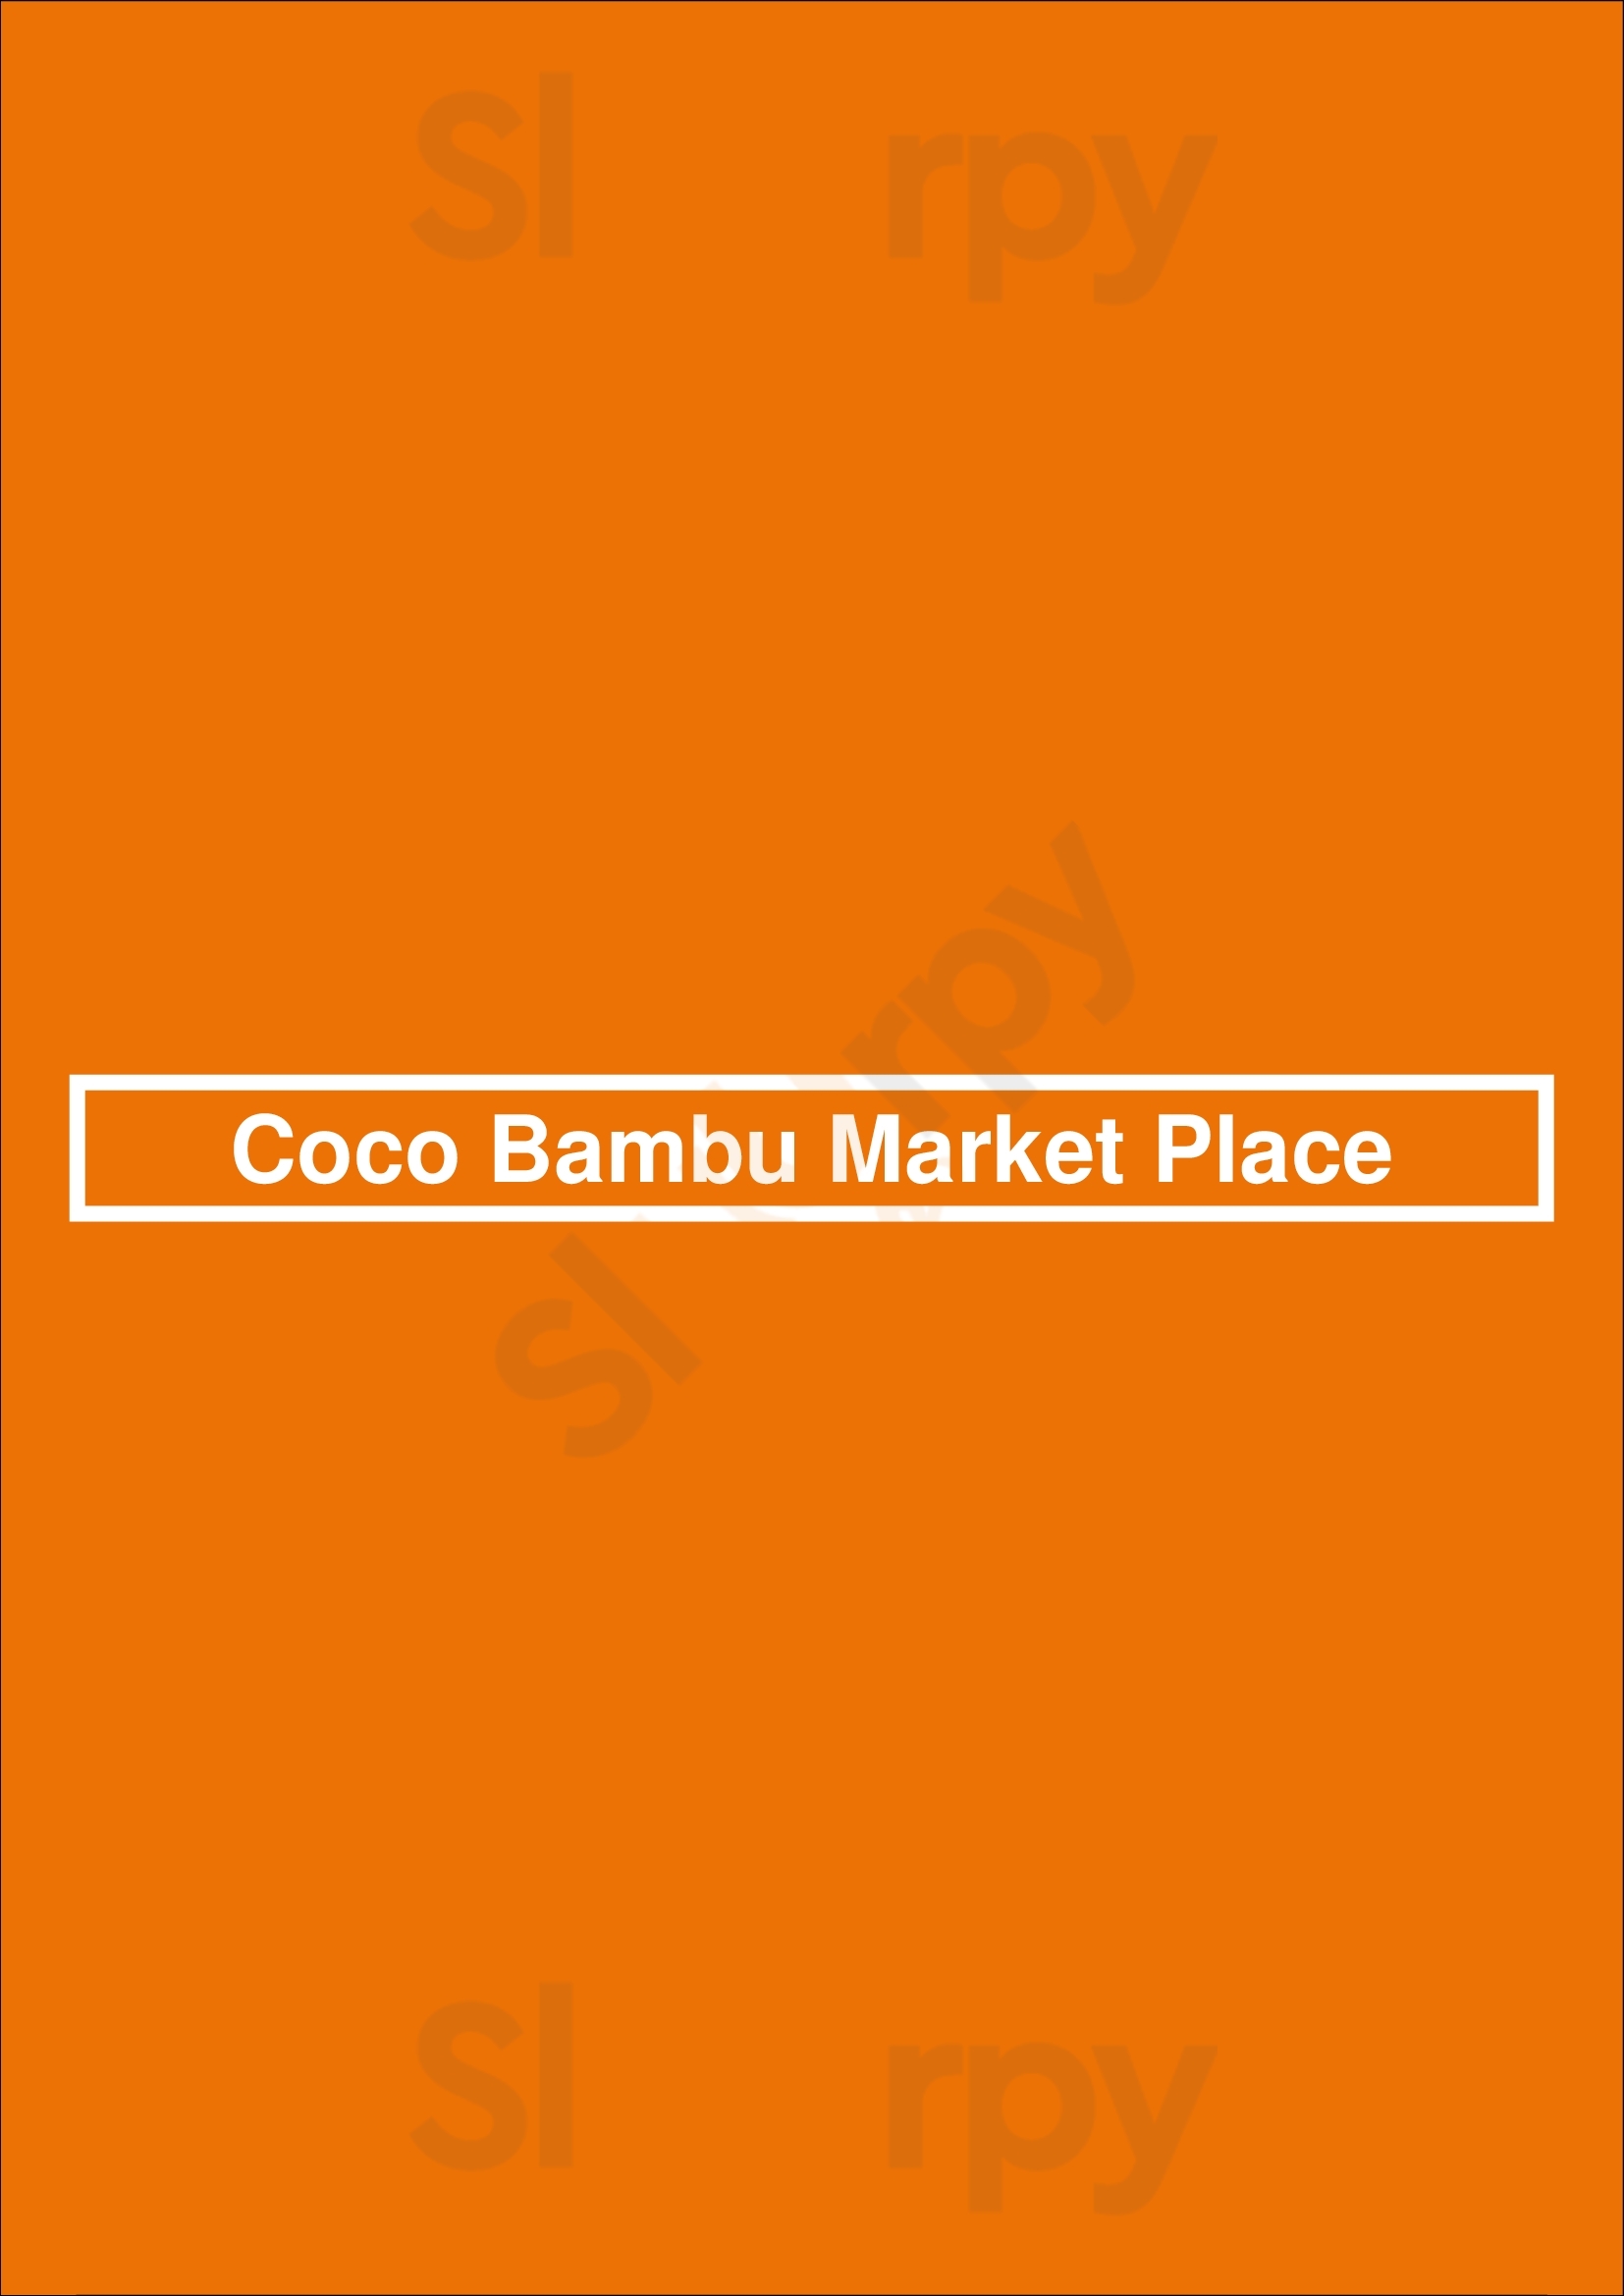 Coco Bambu Market Place São Paulo Menu - 1